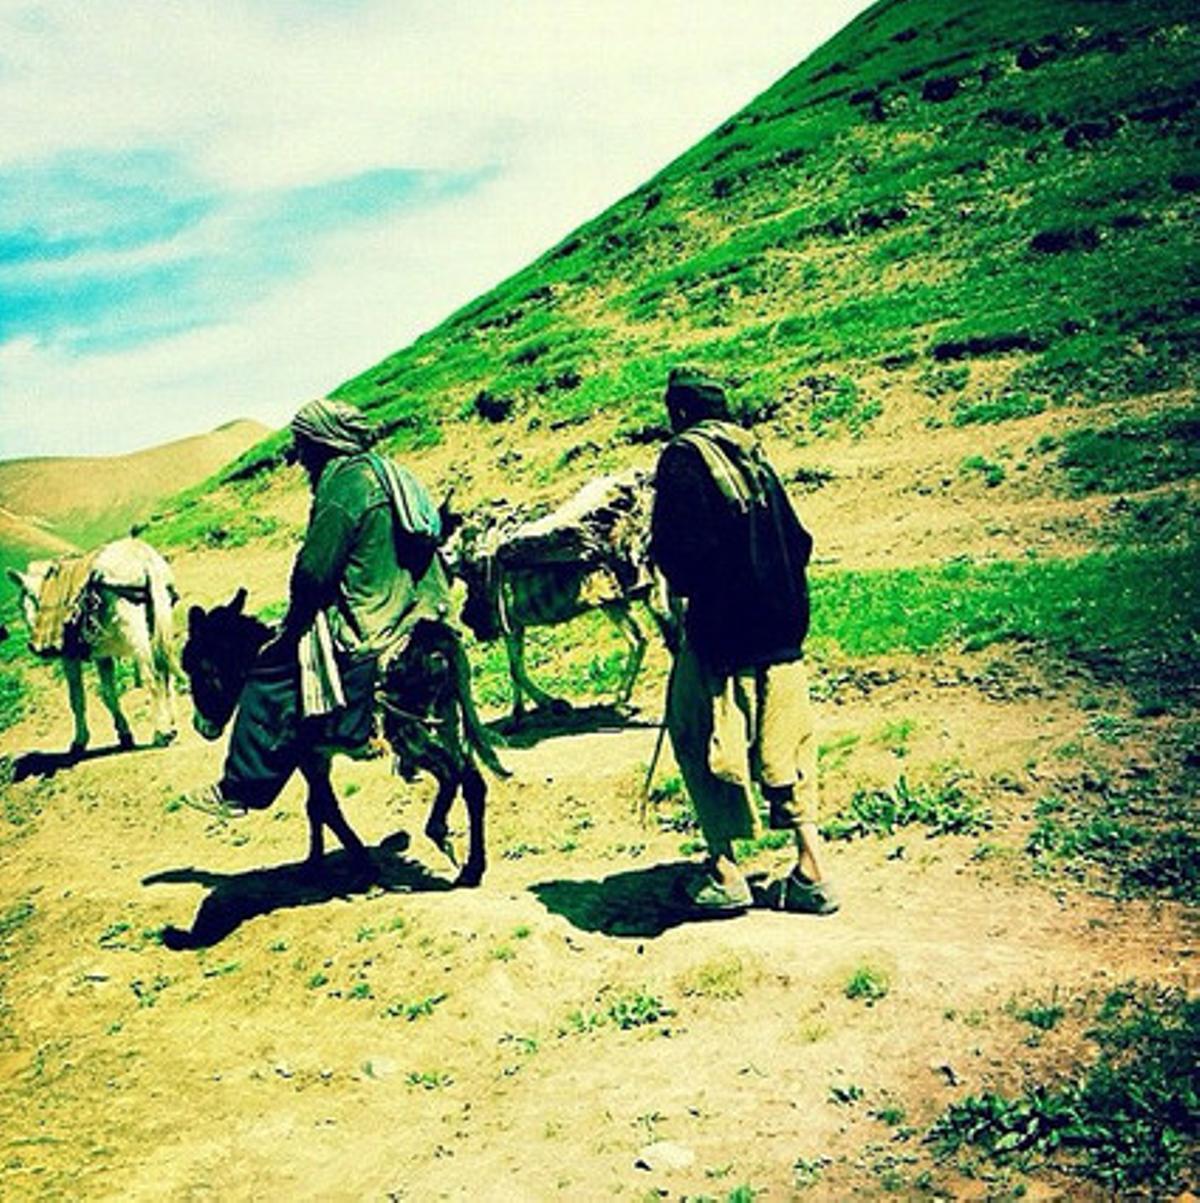 Estampa feudal. Pastors paixtus dalt d’un burro als turons del districte de Muqur. La primavera també ha arribat a l’Afganistan. Estampa insòlita. Amb pastures verdes després de les primeres pluges.